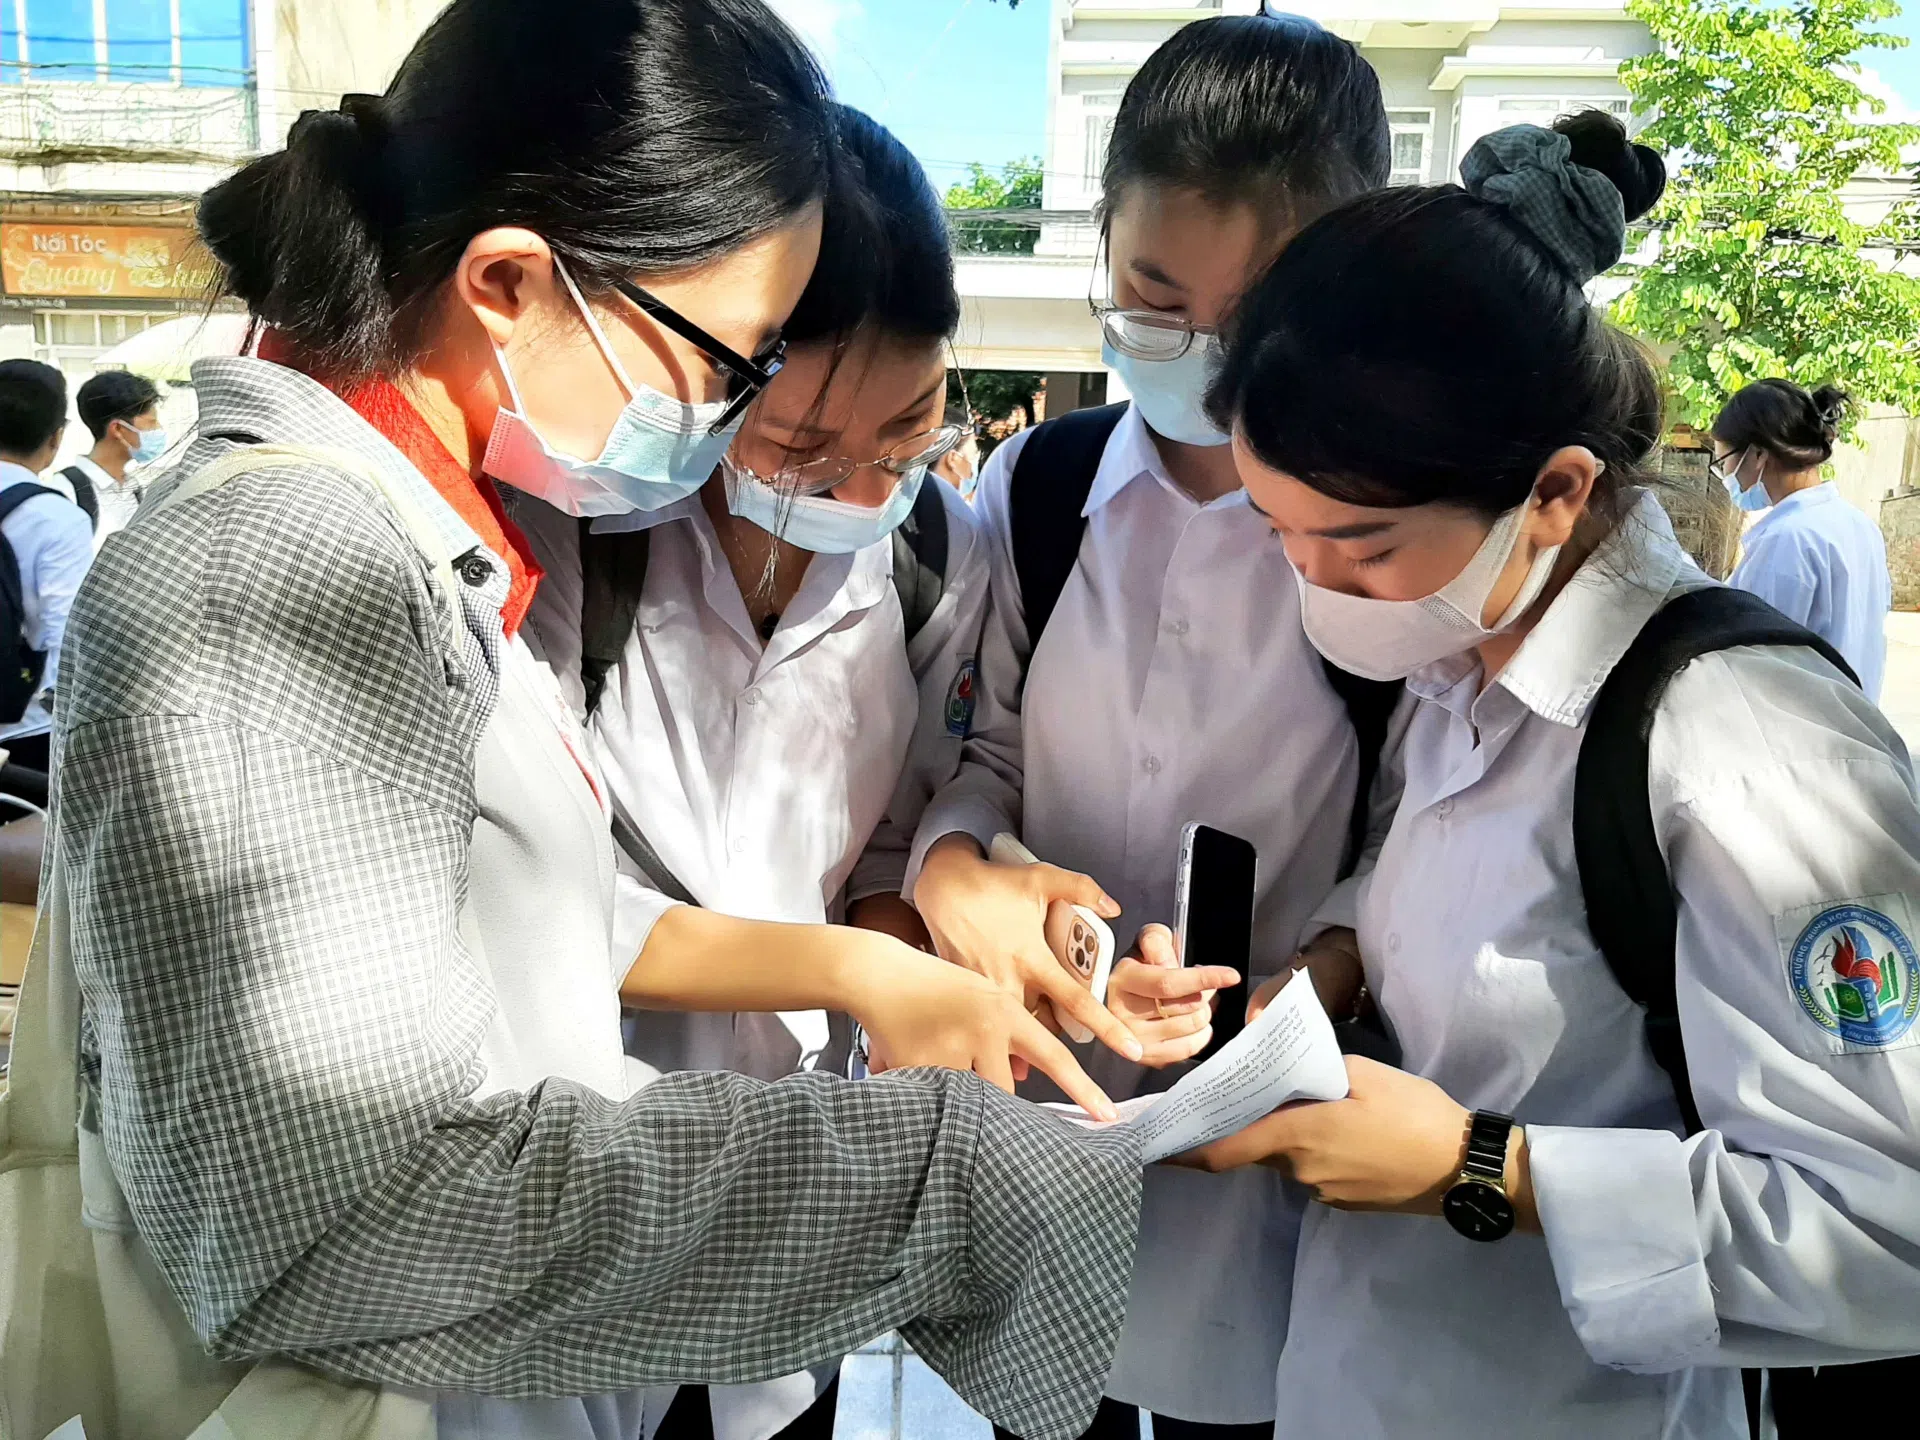 Đáp án đề thi môn Ngữ Văn kỳ thi tuyển sinh lớp 10 tỉnh Đồng Nai năm 2022